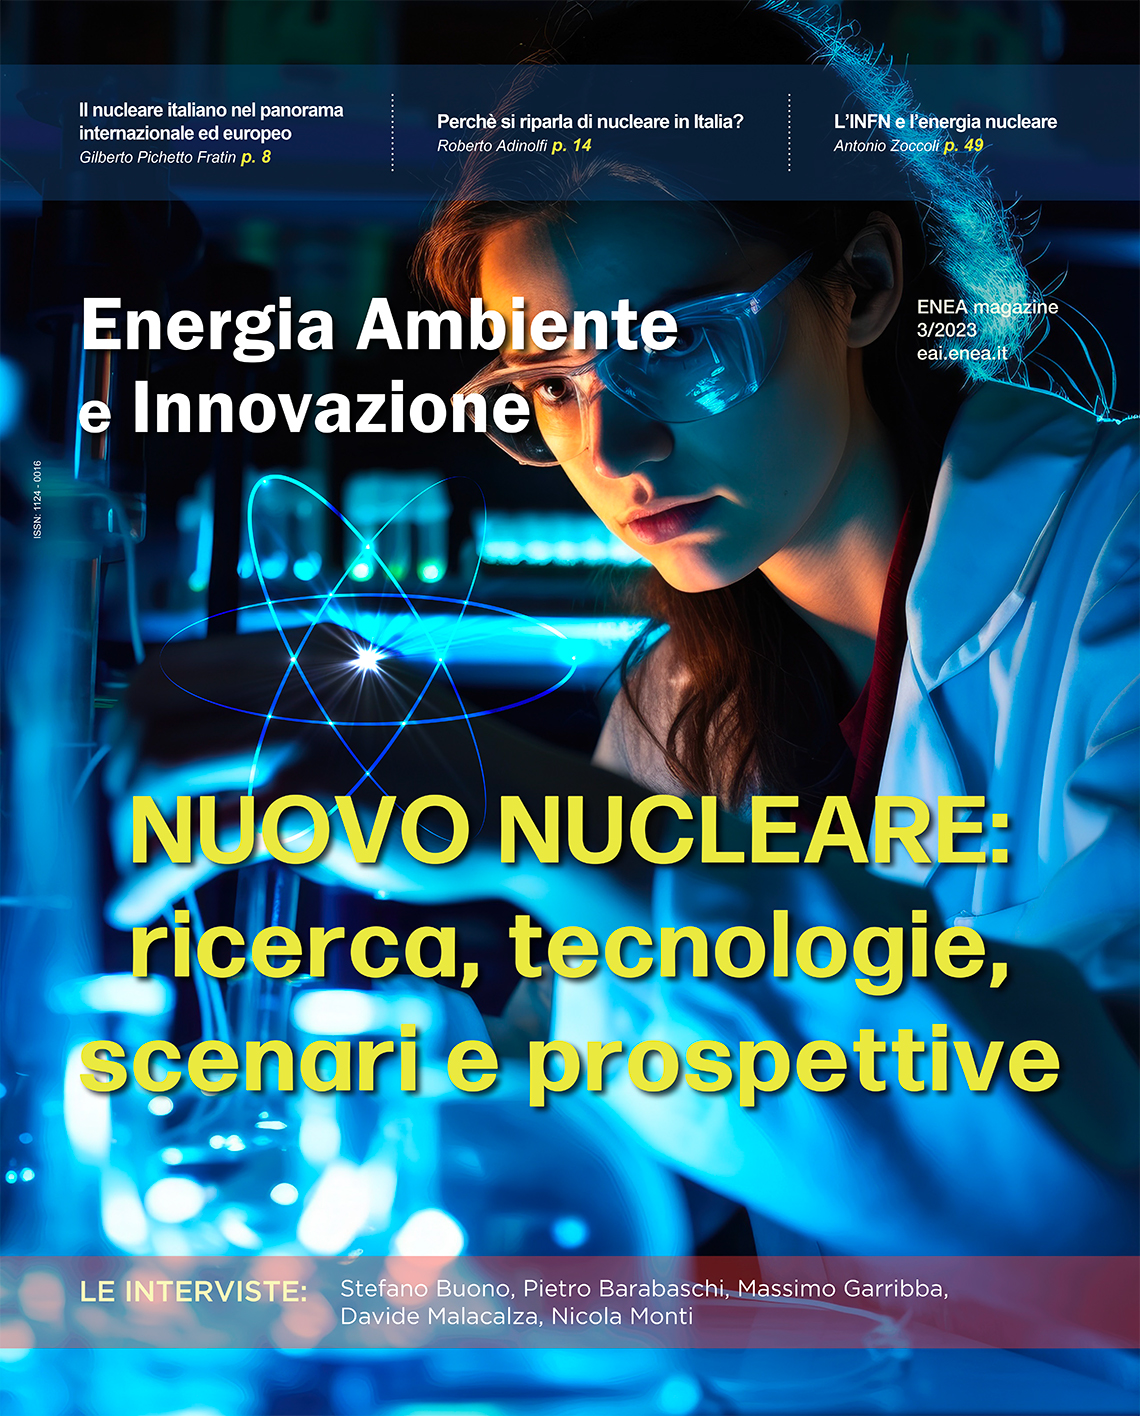 Nuovo nucleare: ricerca, tecnologie, scenari e prospettive